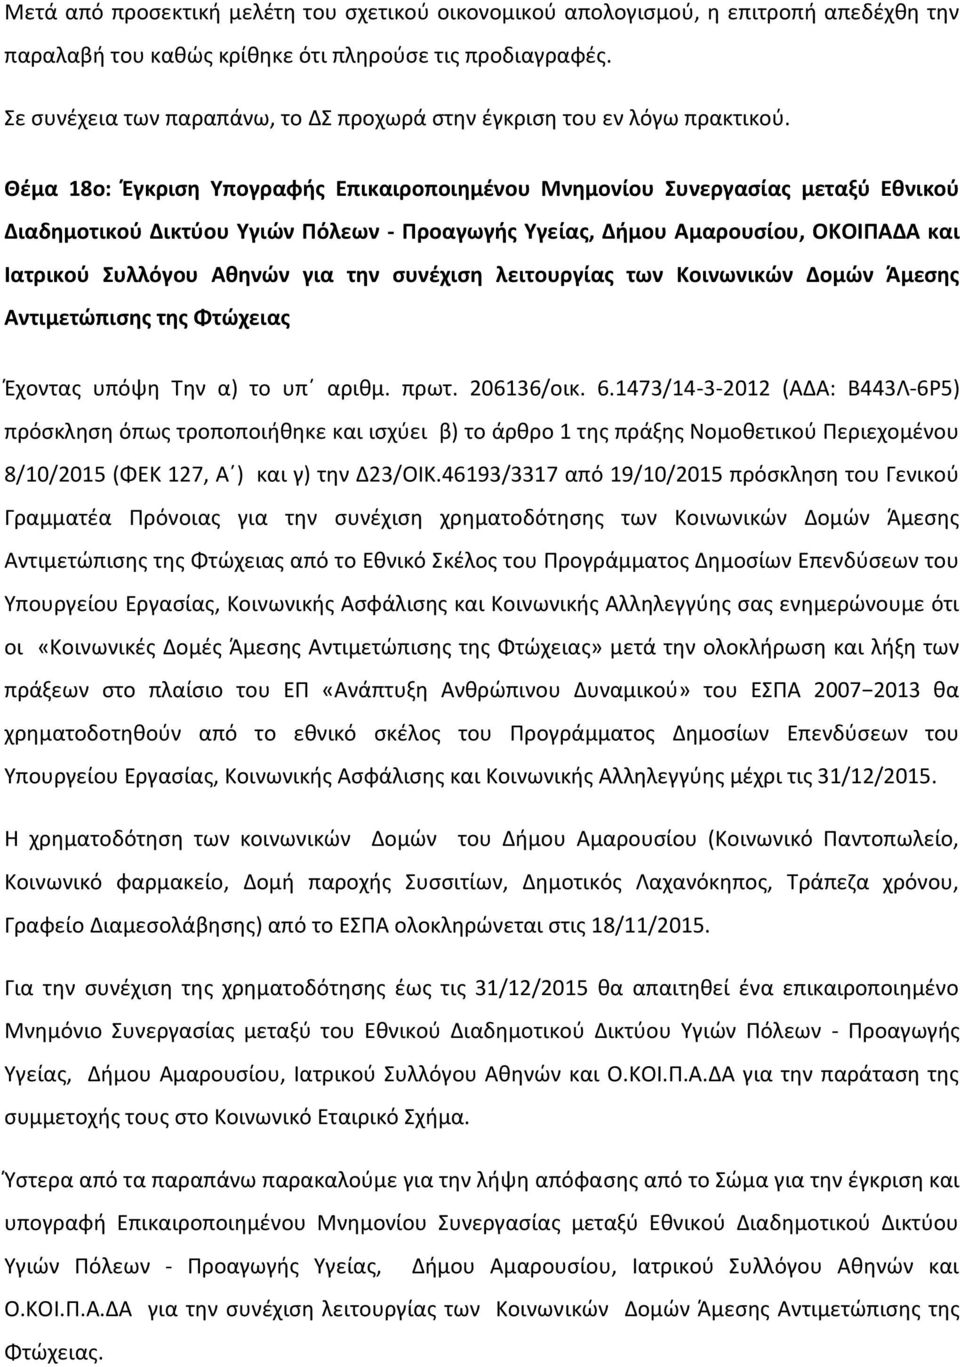 Θέμα 18ο: Έγκριση Υπογραφής Επικαιροποιημένου Μνημονίου Συνεργασίας μεταξύ Εθνικού Διαδημοτικού Δικτύου Υγιών Πόλεων - Προαγωγής Υγείας, Δήμου Αμαρουσίου, ΟΚΟΙΠΑΔΑ και Ιατρικού Συλλόγου Αθηνών για